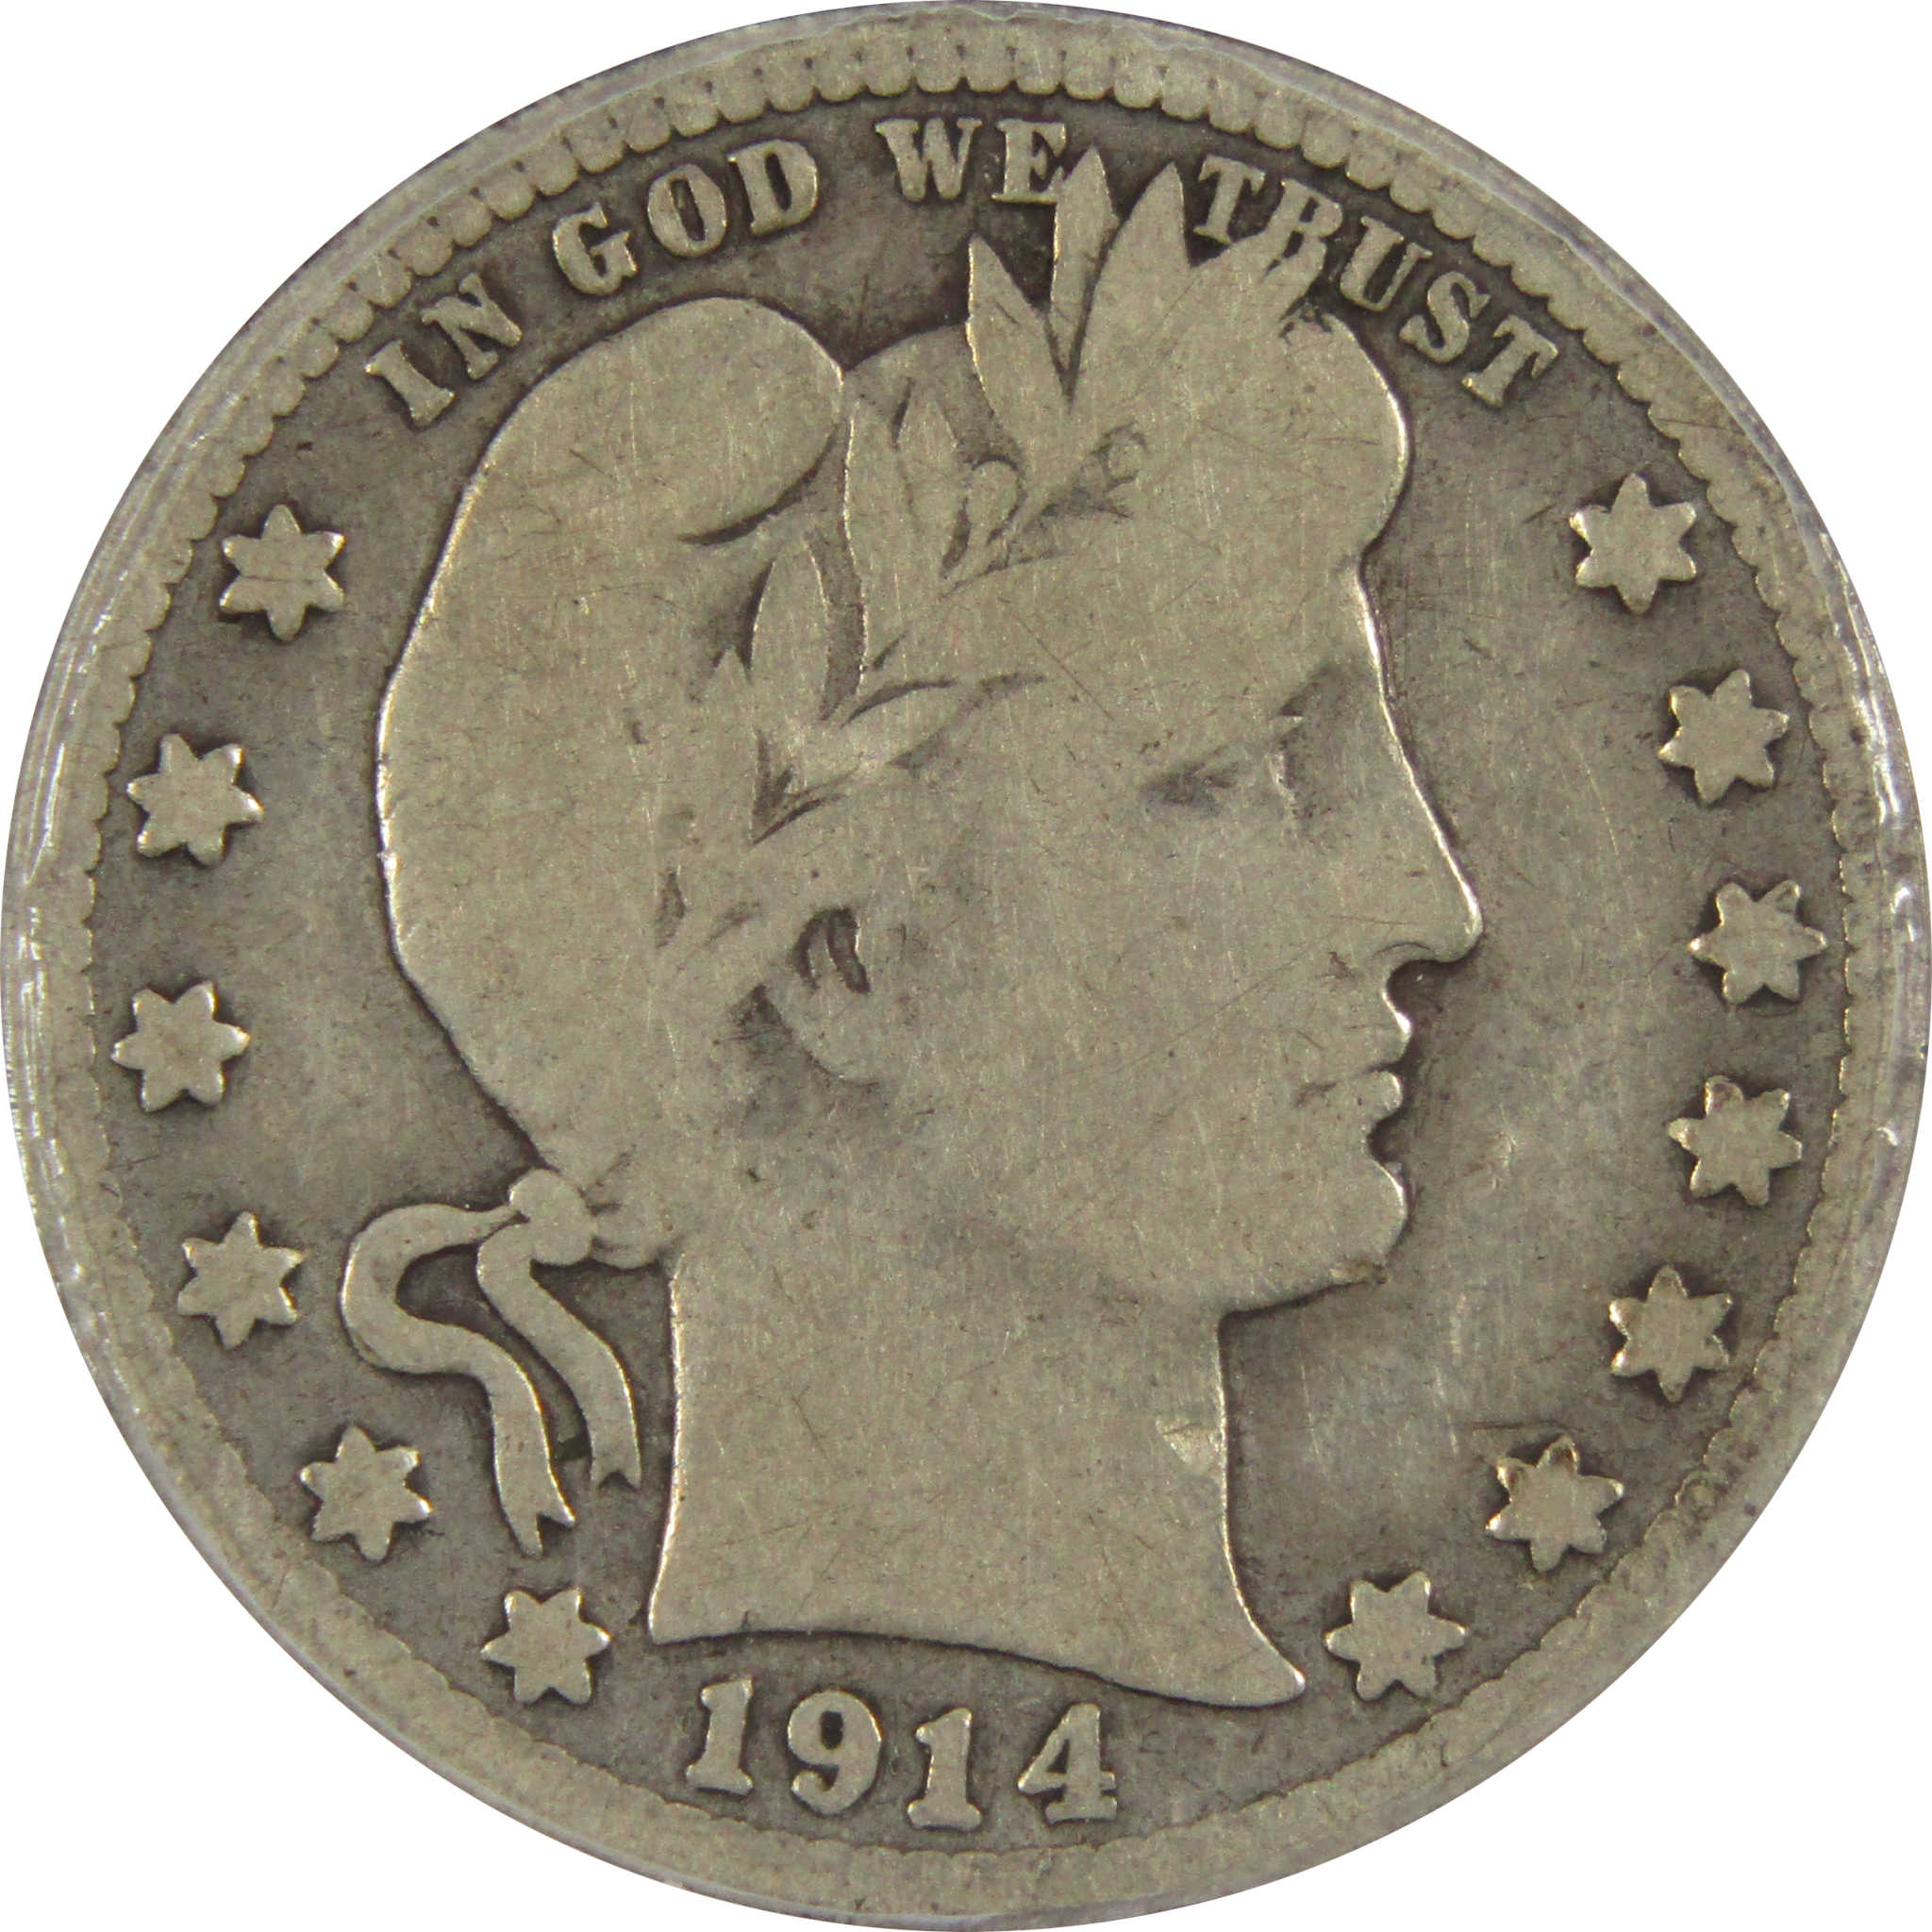 1914 S Barber Quarter VG 8 ANACS 90% Silver 25c Type Coin SKU:IPC7285